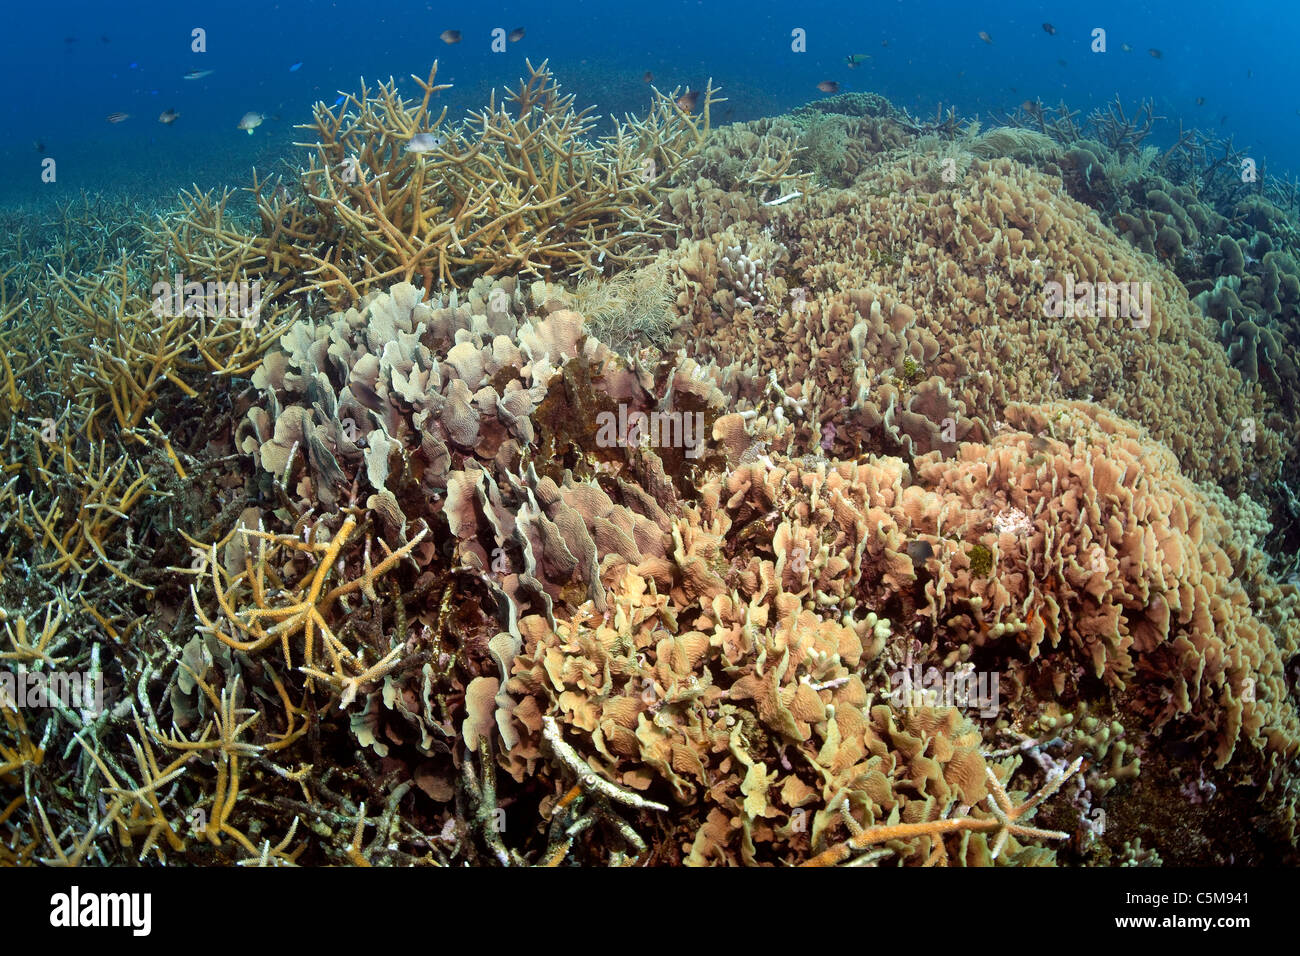 Plusieurs espèces de coraux forment un écosystème corallien sain à Cordelia Banques à Roatan, au large des côtes du Honduras. Banque D'Images